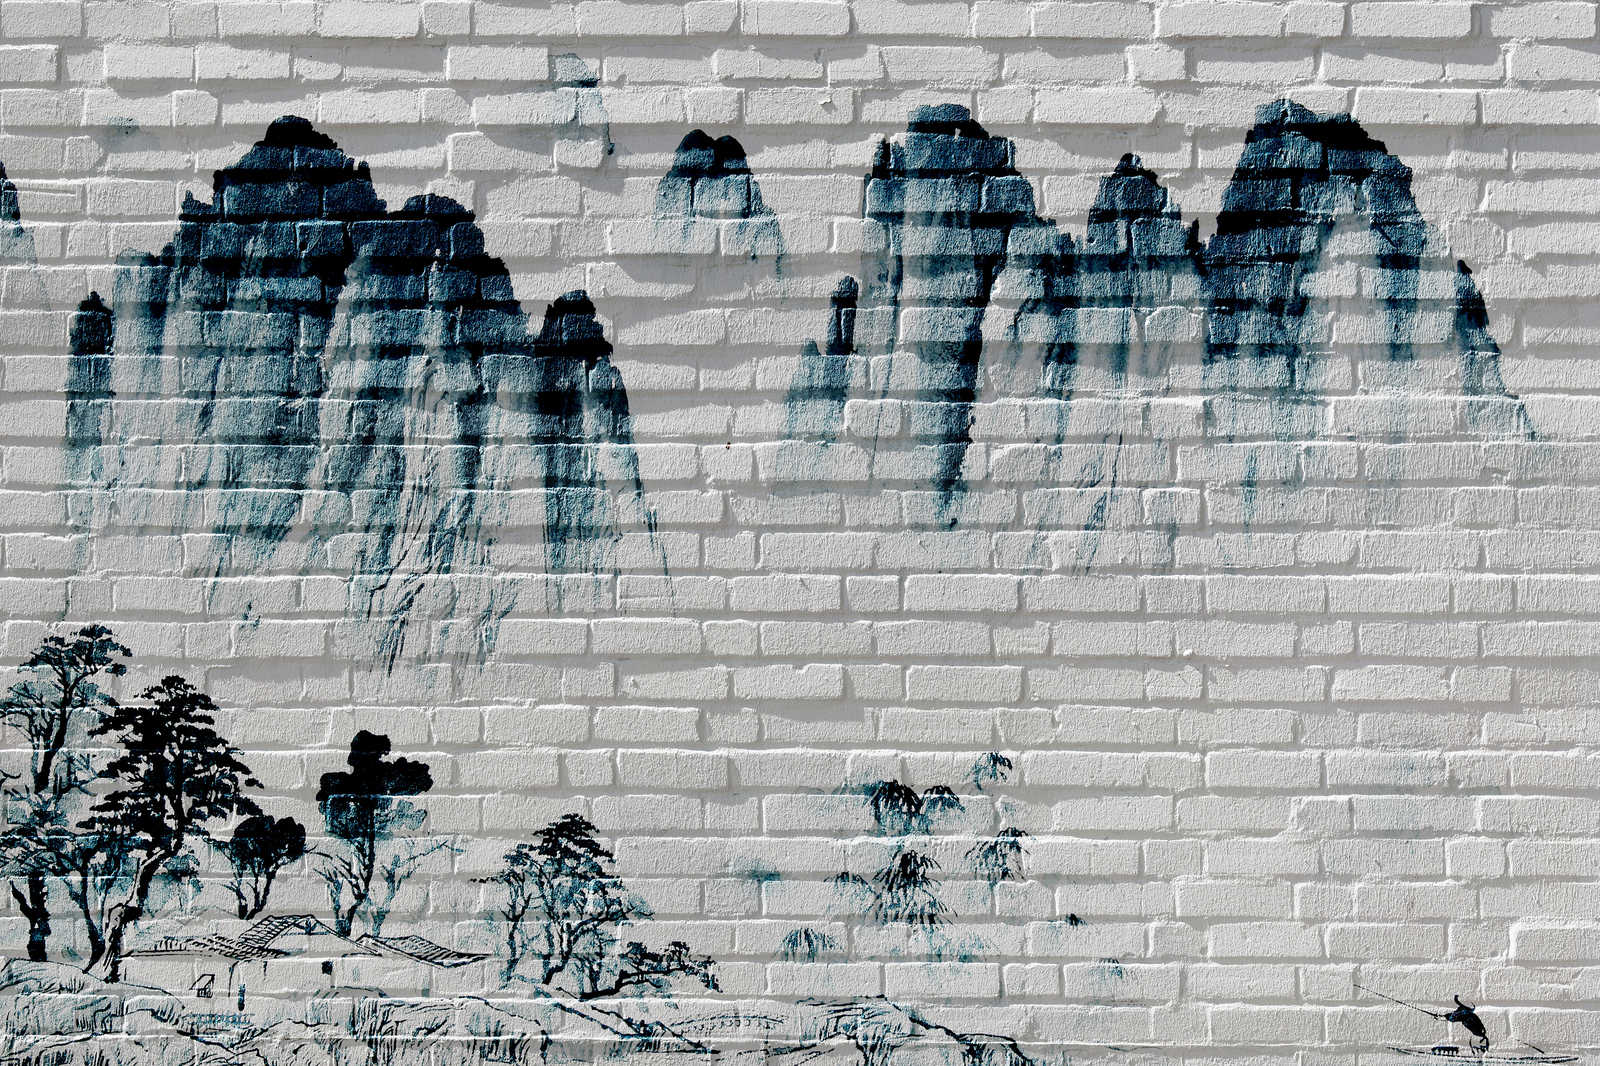             Leinwandbild Berge auf Backsteinmauer – 0,90 m x 0,60 m
        